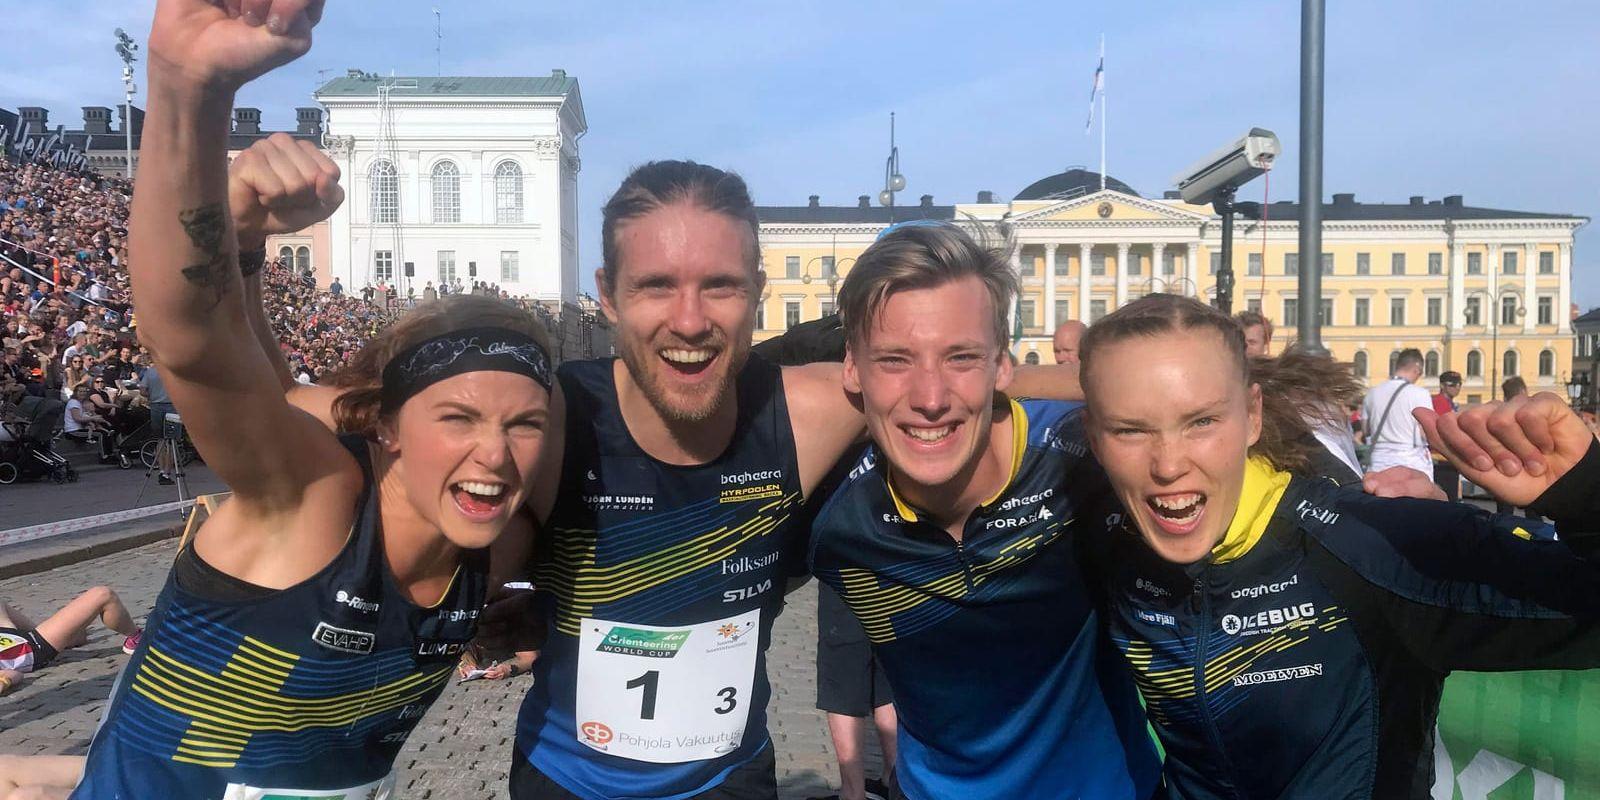 Sveriges segrande sprintstafett lag i Helsingfors (från vänster): Karolin Ohlsson, Gustav Bergman, Emil Svensk, Tove Alexandersson.